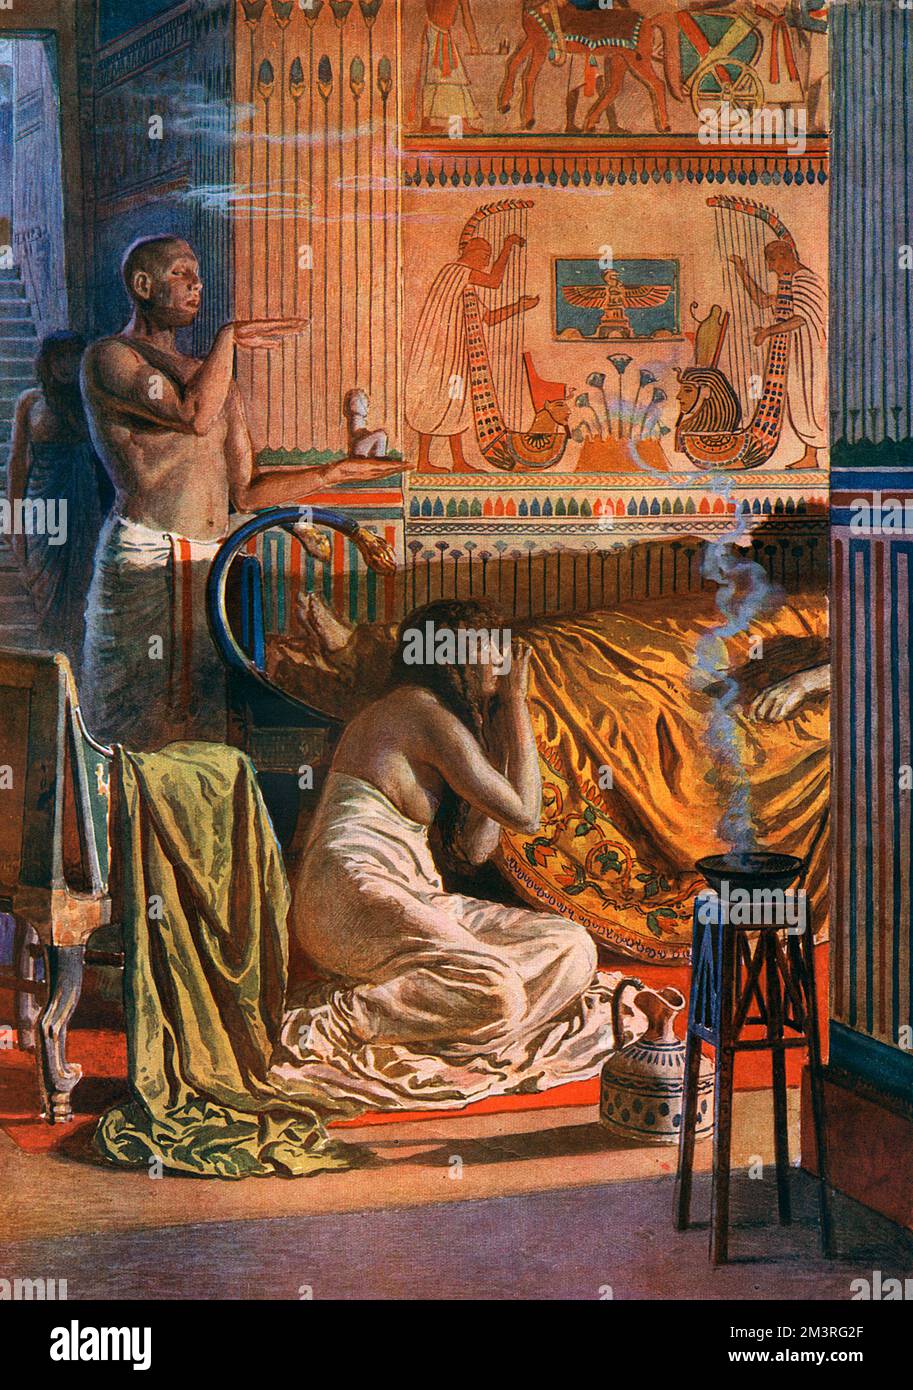 Du Palais à la tombe, épisode 1: Pharaon tombe malade, l'exorciste est appelé. Premier d'une série de reconstructions historiques par Fortunino Matania dans le numéro égyptien du magazine sphère (suite à la découverte du tombeau de Toutankhamen), retraçant le voyage d'un pharaon de palais en tombeau. Ici est représentée la visite d'un exorciste convoqué par la femme d'un pharaon gravement malade. Il apporte quelques petites figures possédant un pouvoir suffisant pour chasser l'esprit mauvais qui est en possession du corps du souverain malade il annonce une incantation puissante et promet l'amélioration de l'état du patient. Banque D'Images